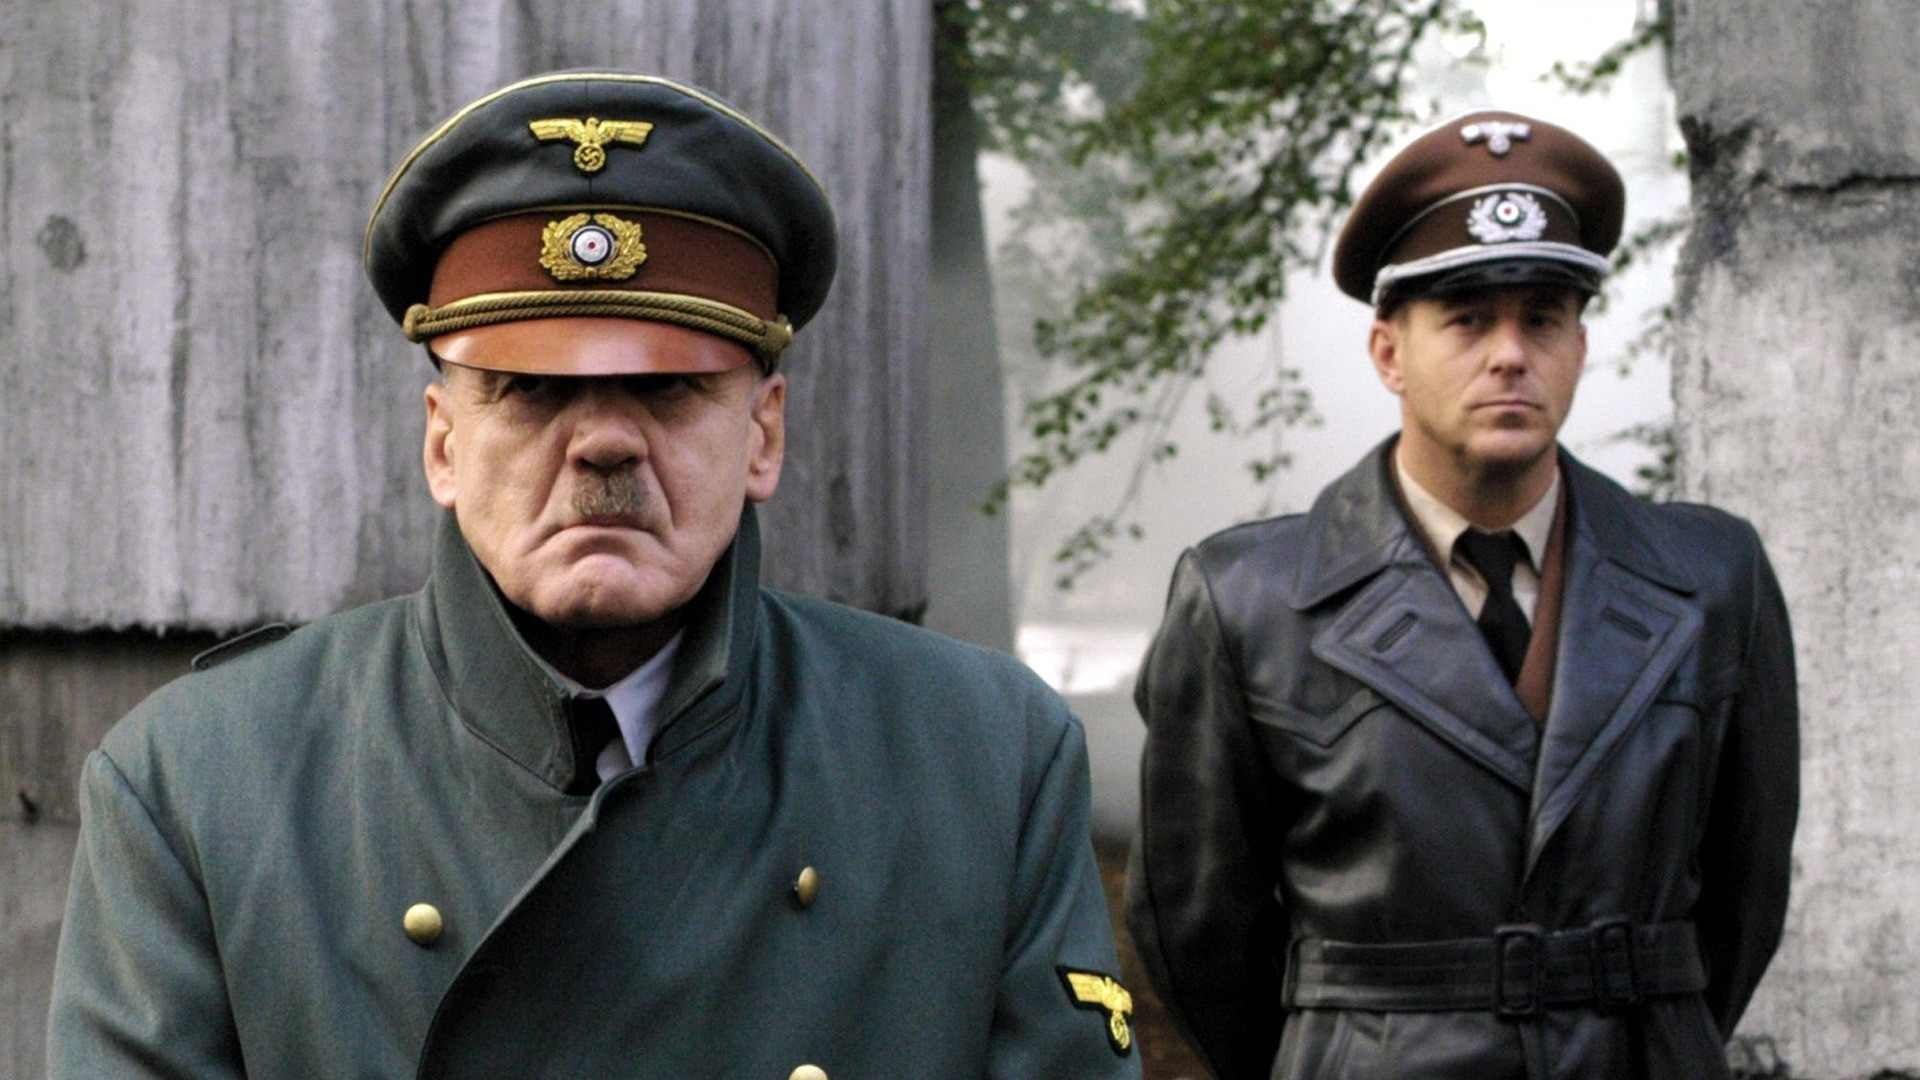 La caduta - Gli ultimi giorni di Hitler